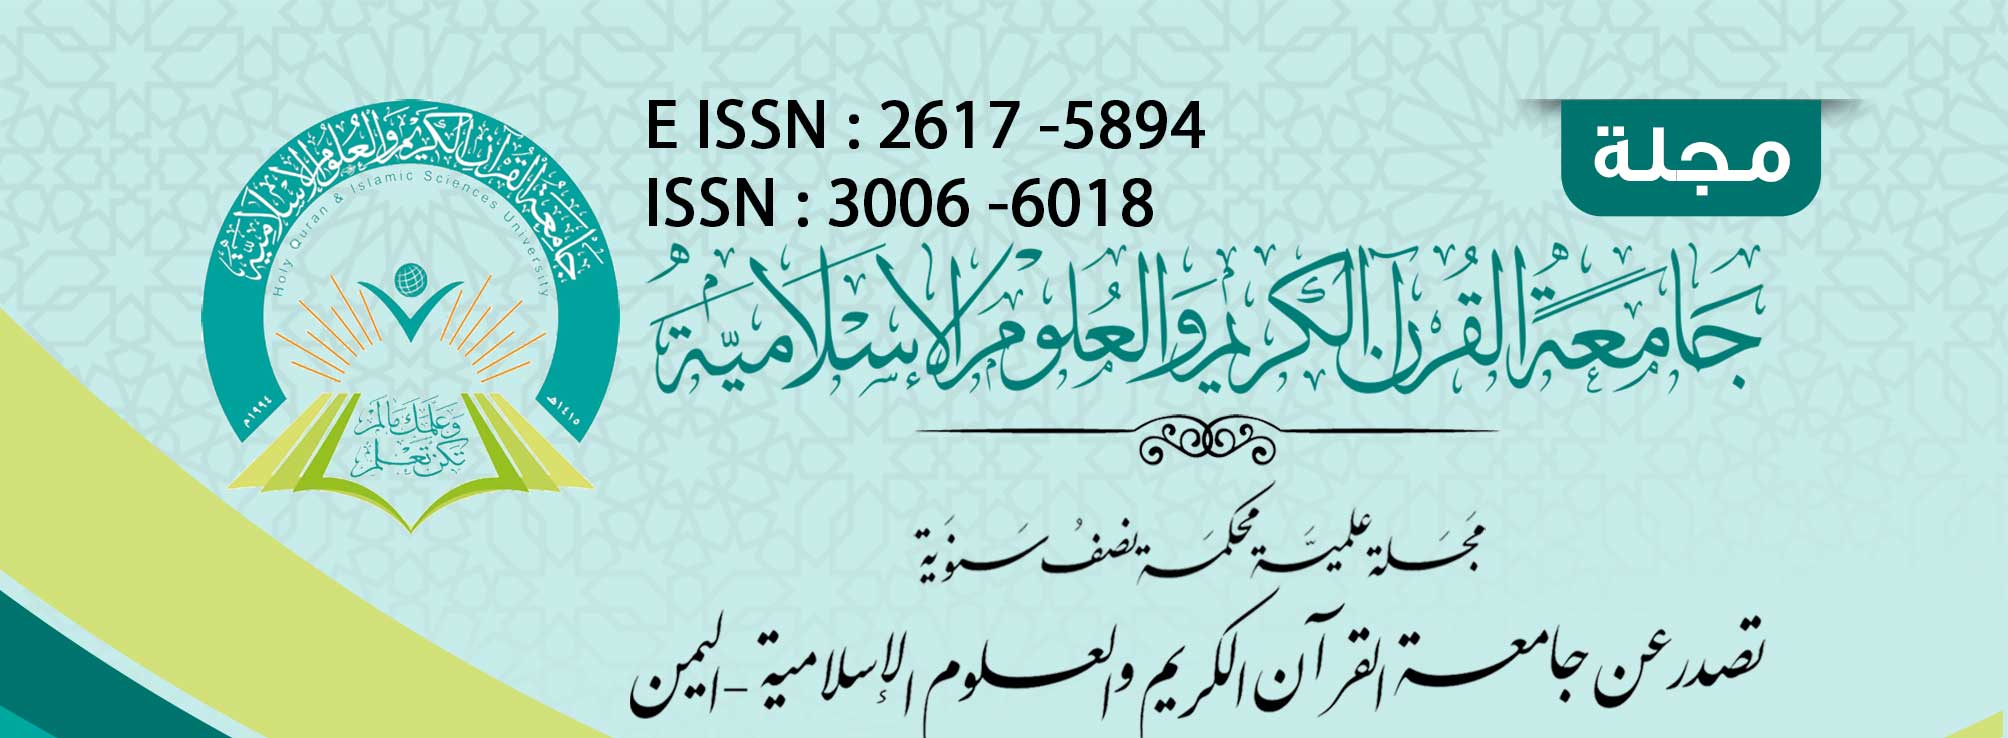 مجلة جامعة القرآن الكريم والعلوم الاسلامية